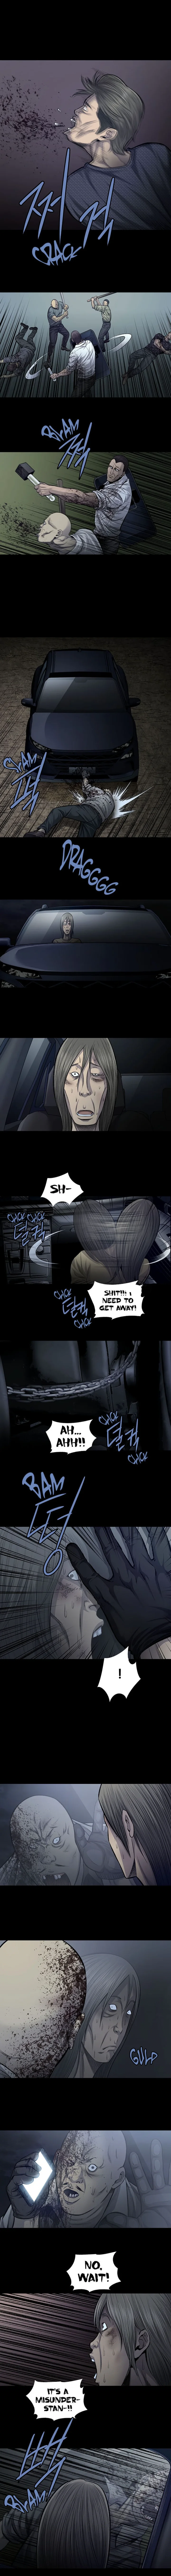 Vigilante - Chapter 63 Page 4